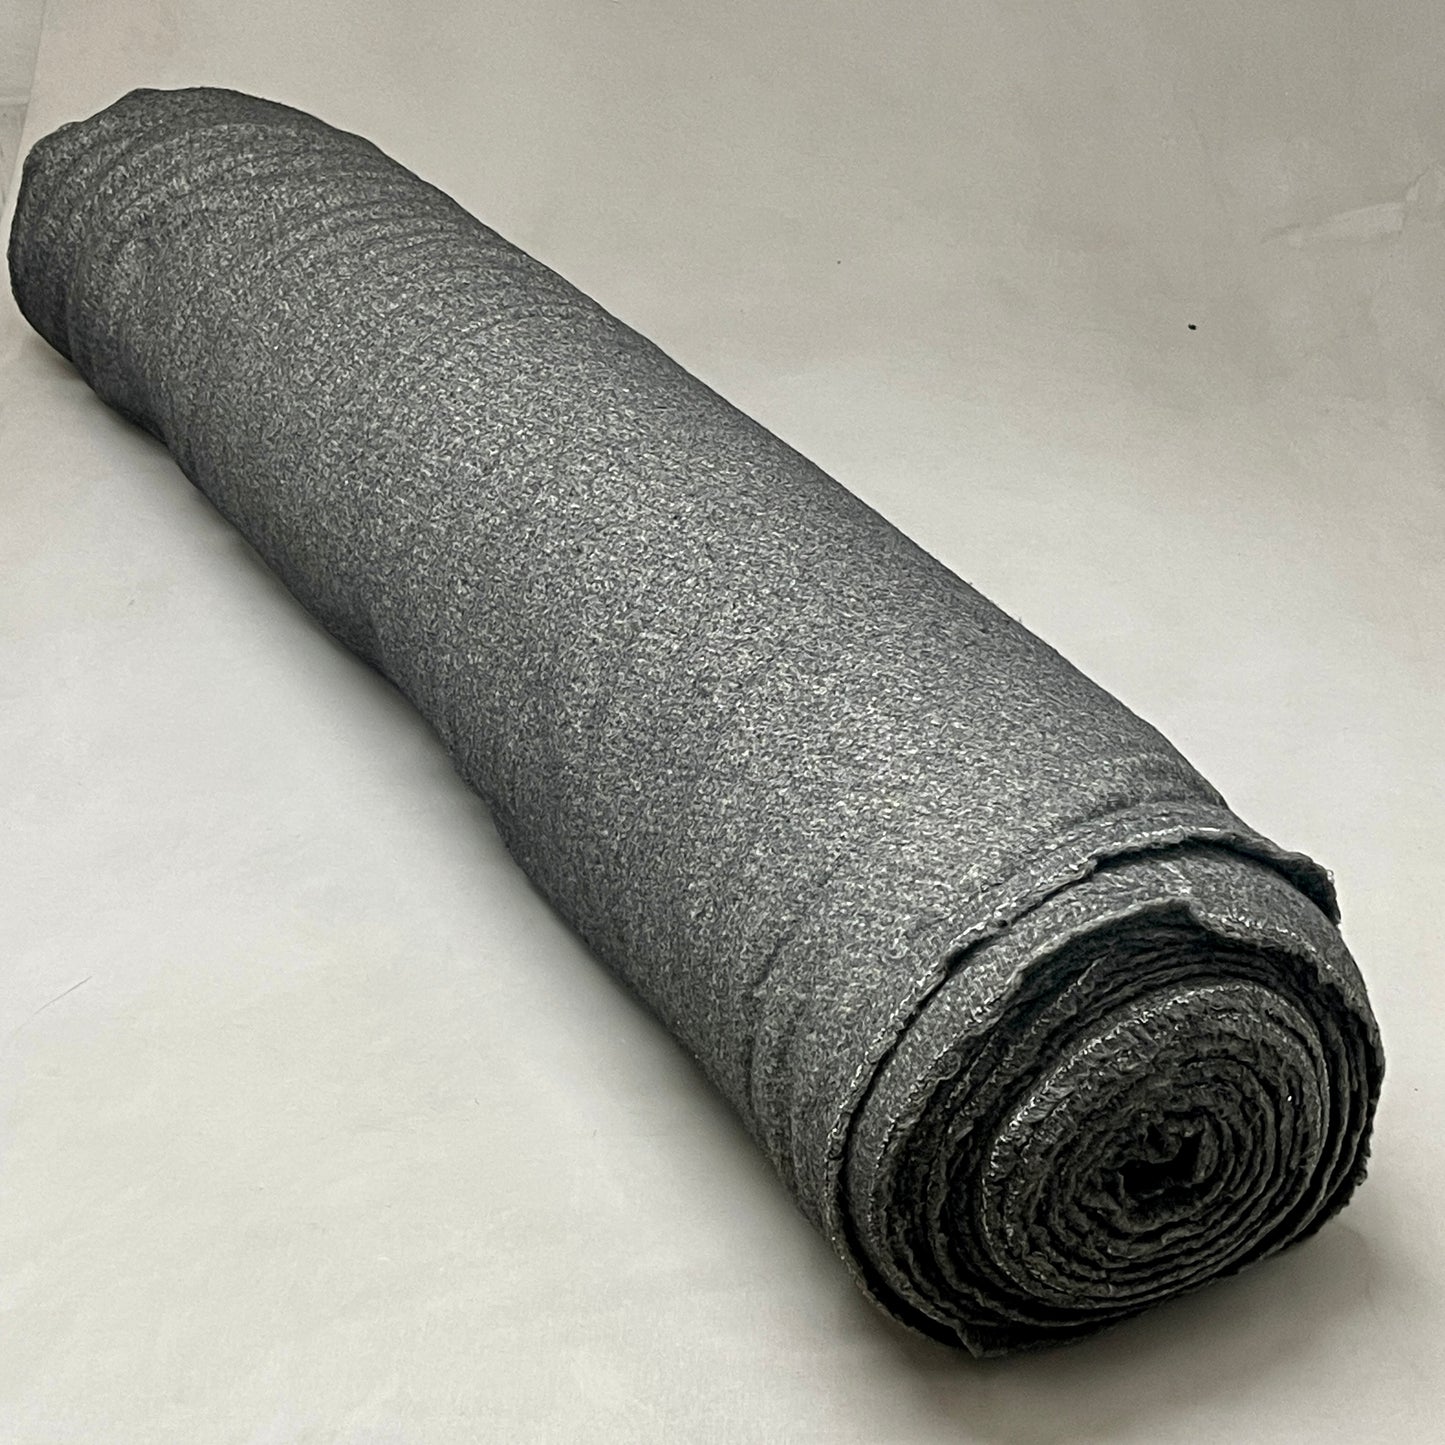 Z@ 18 YARDS of FLEECE! YAW LIAMY Large Roll of Fleece Fabric / Material 60” W Sheepskin Grey (New) X